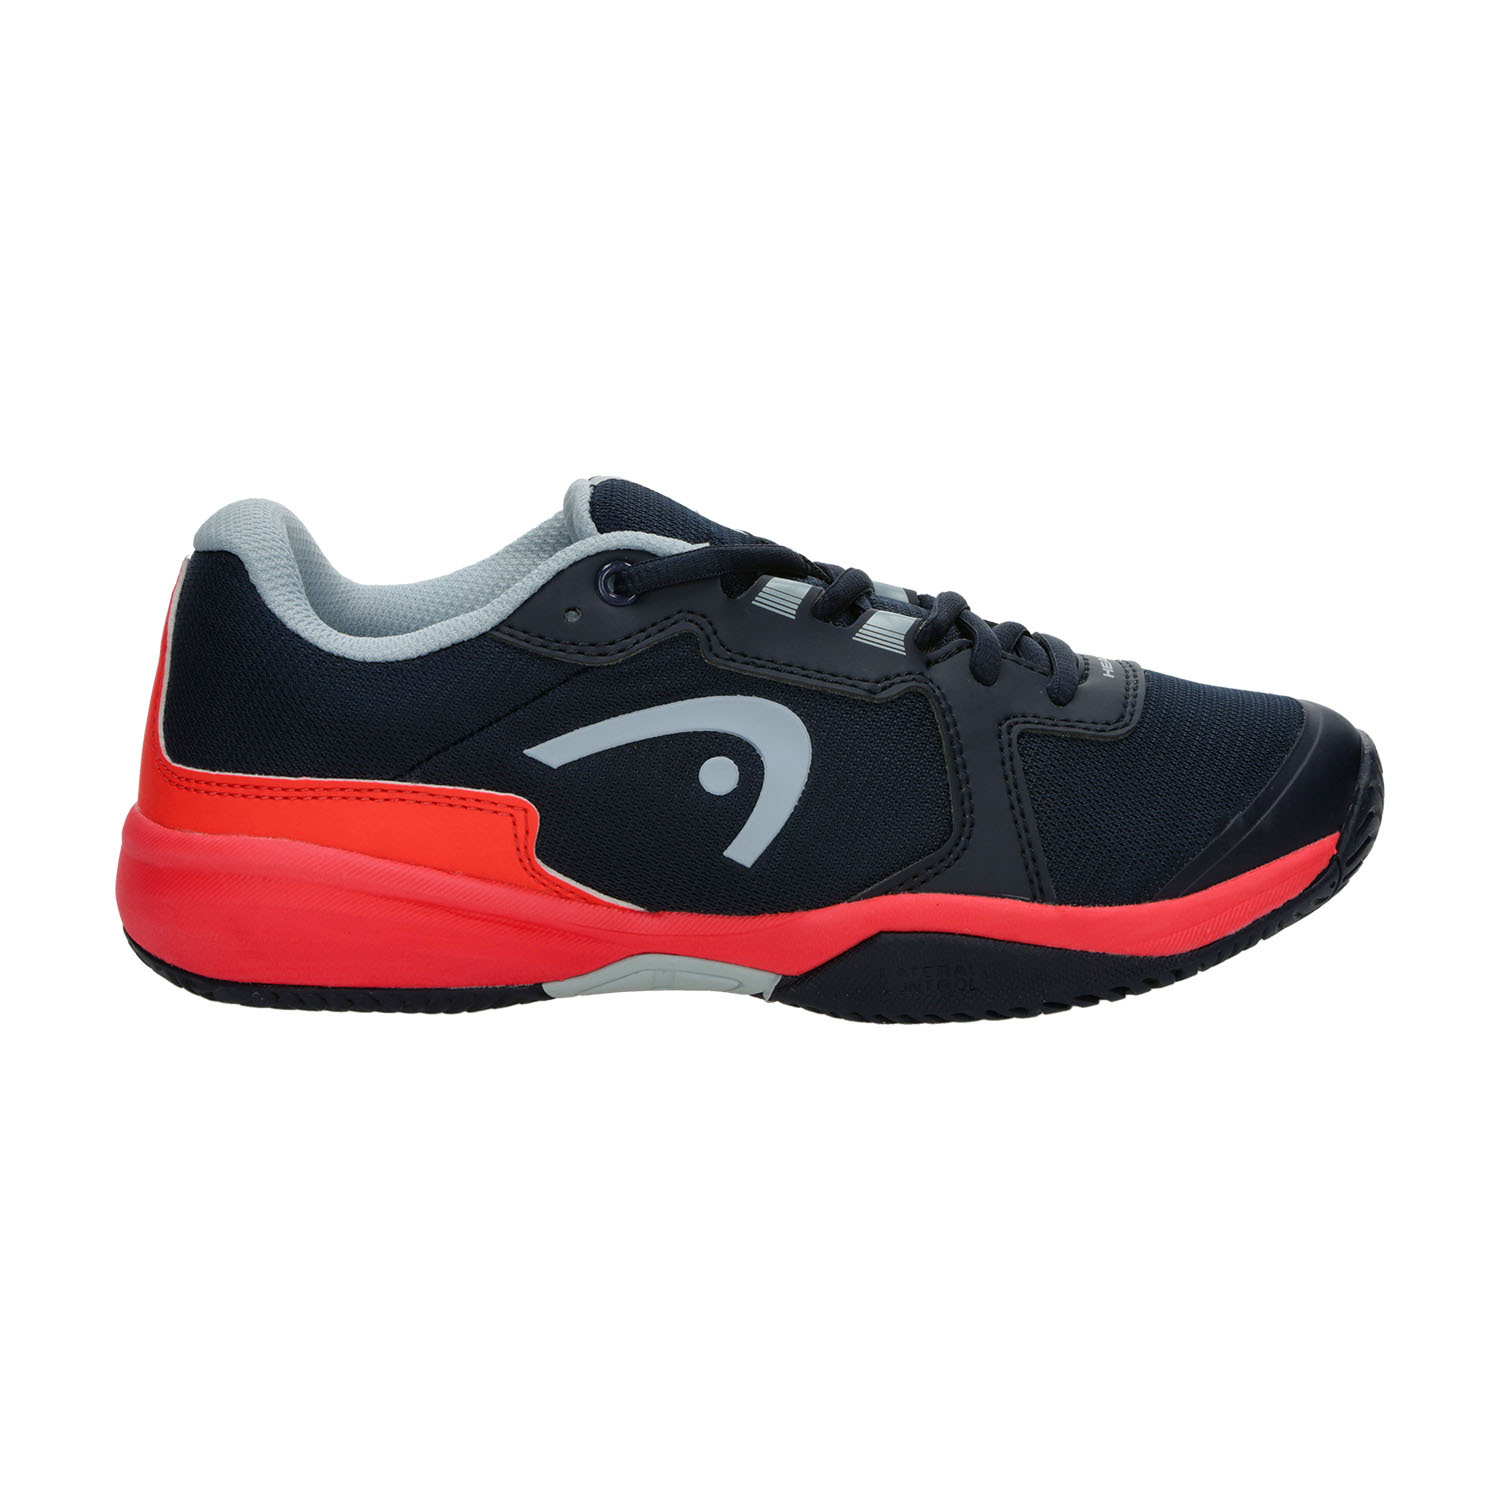 HEAD, Sprint 3.5 Junior Tennis Shoe, Tennis Shoes